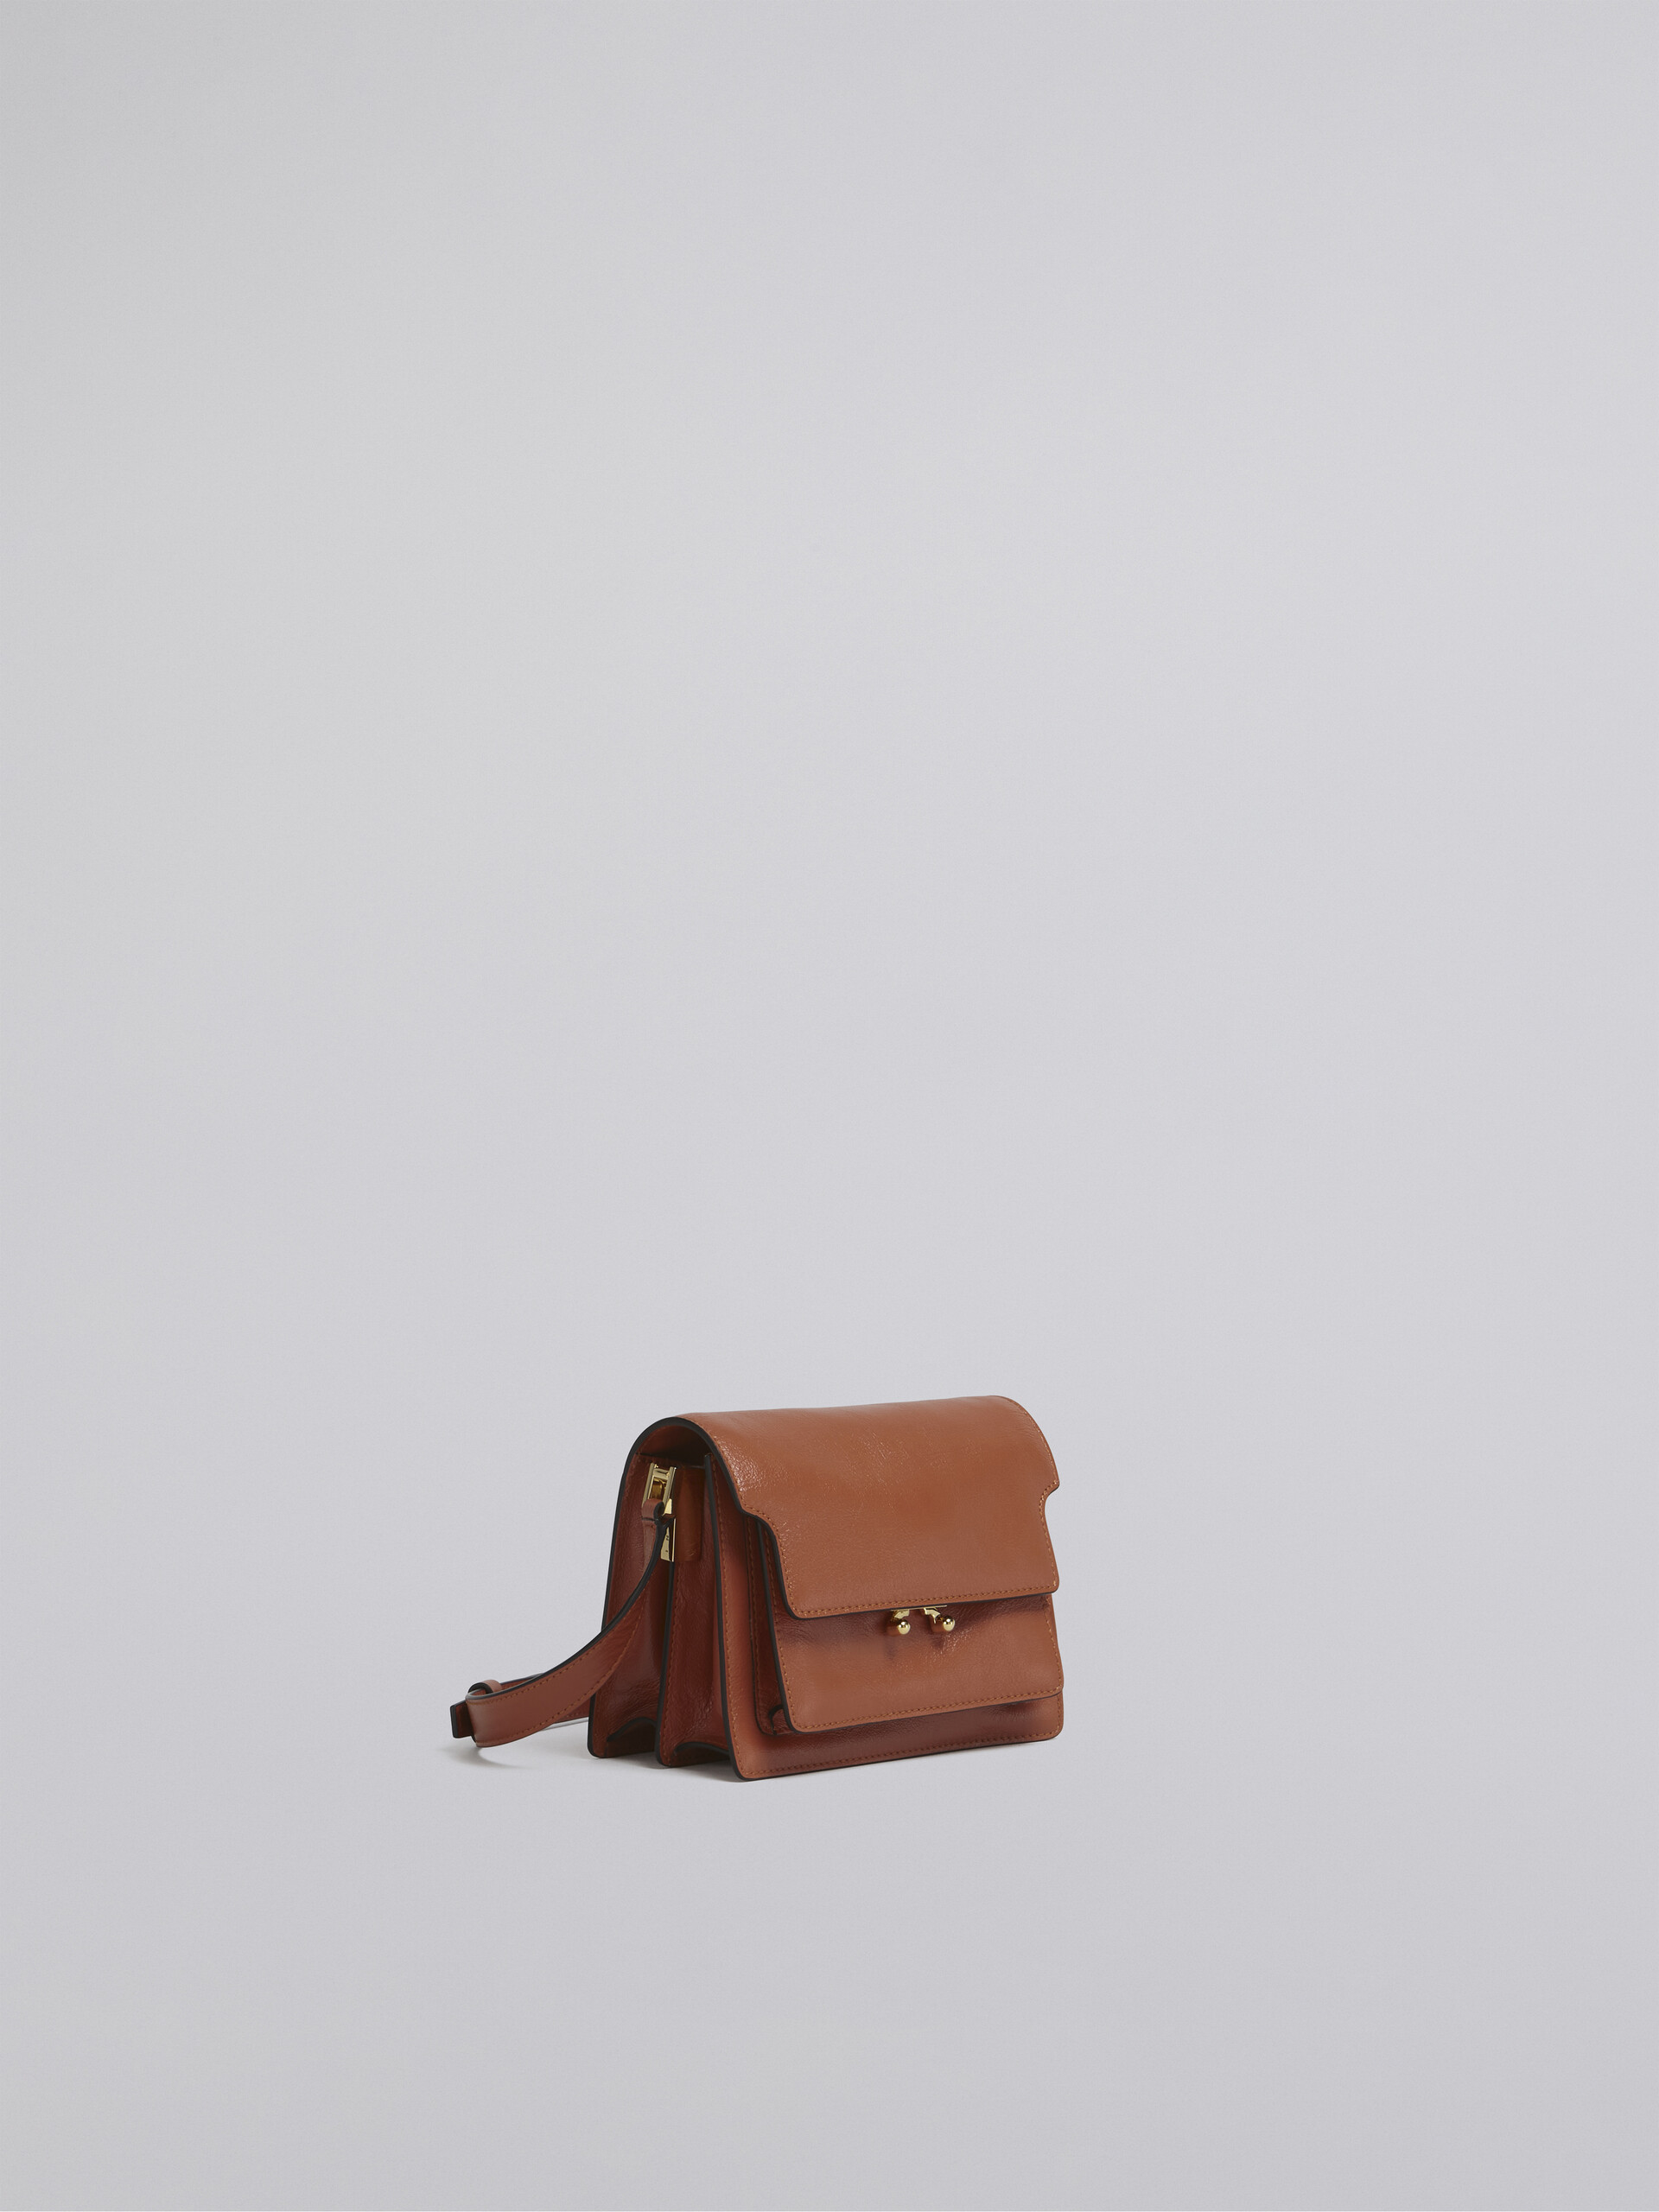 TRUNK SOFT bag mini in pelle marrone - Borse a spalla - Image 6